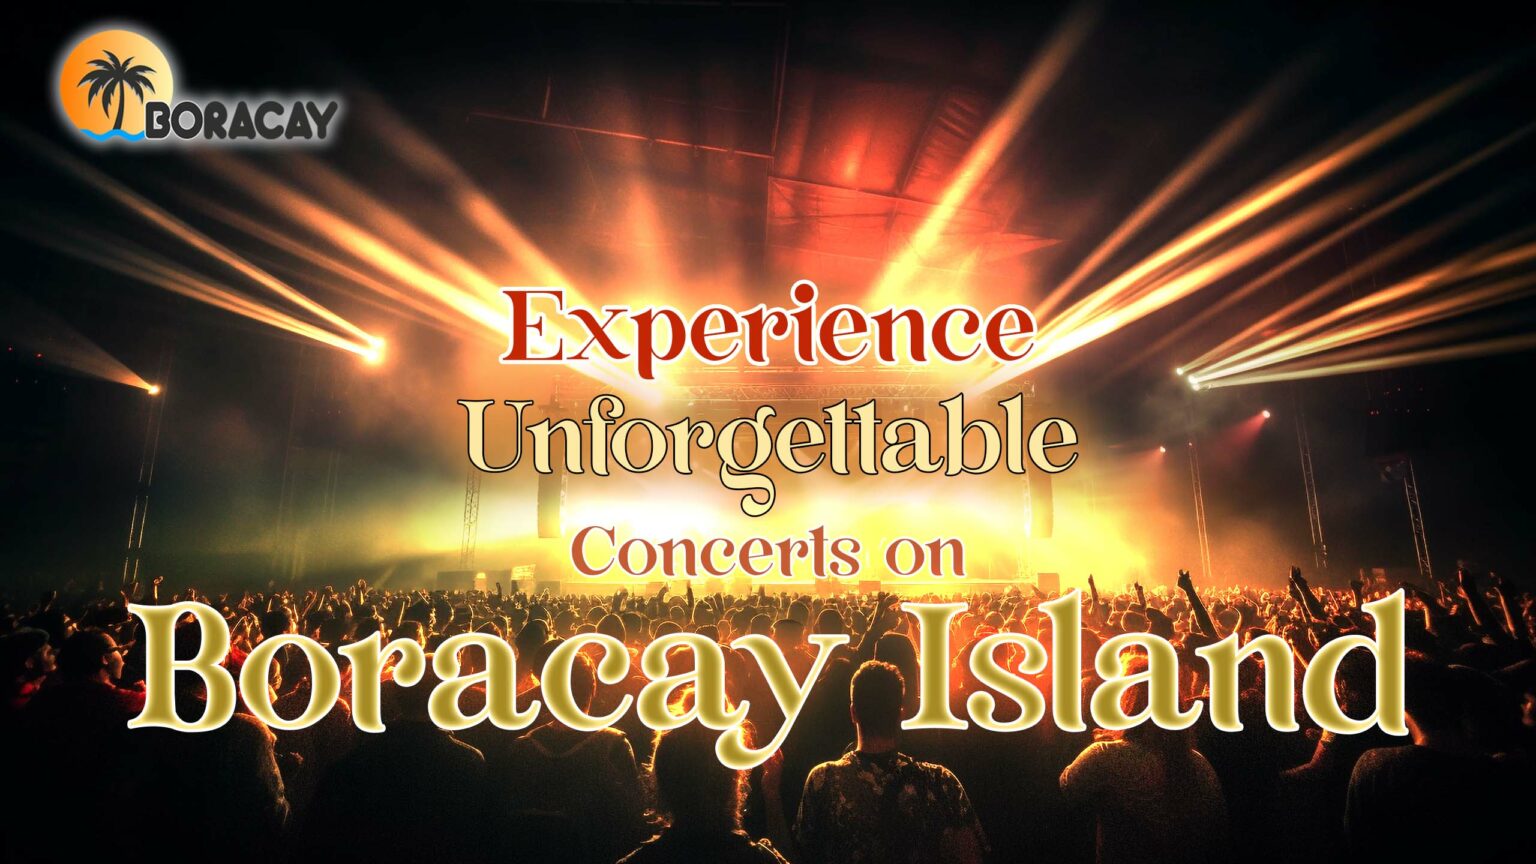 Boracay Island concert